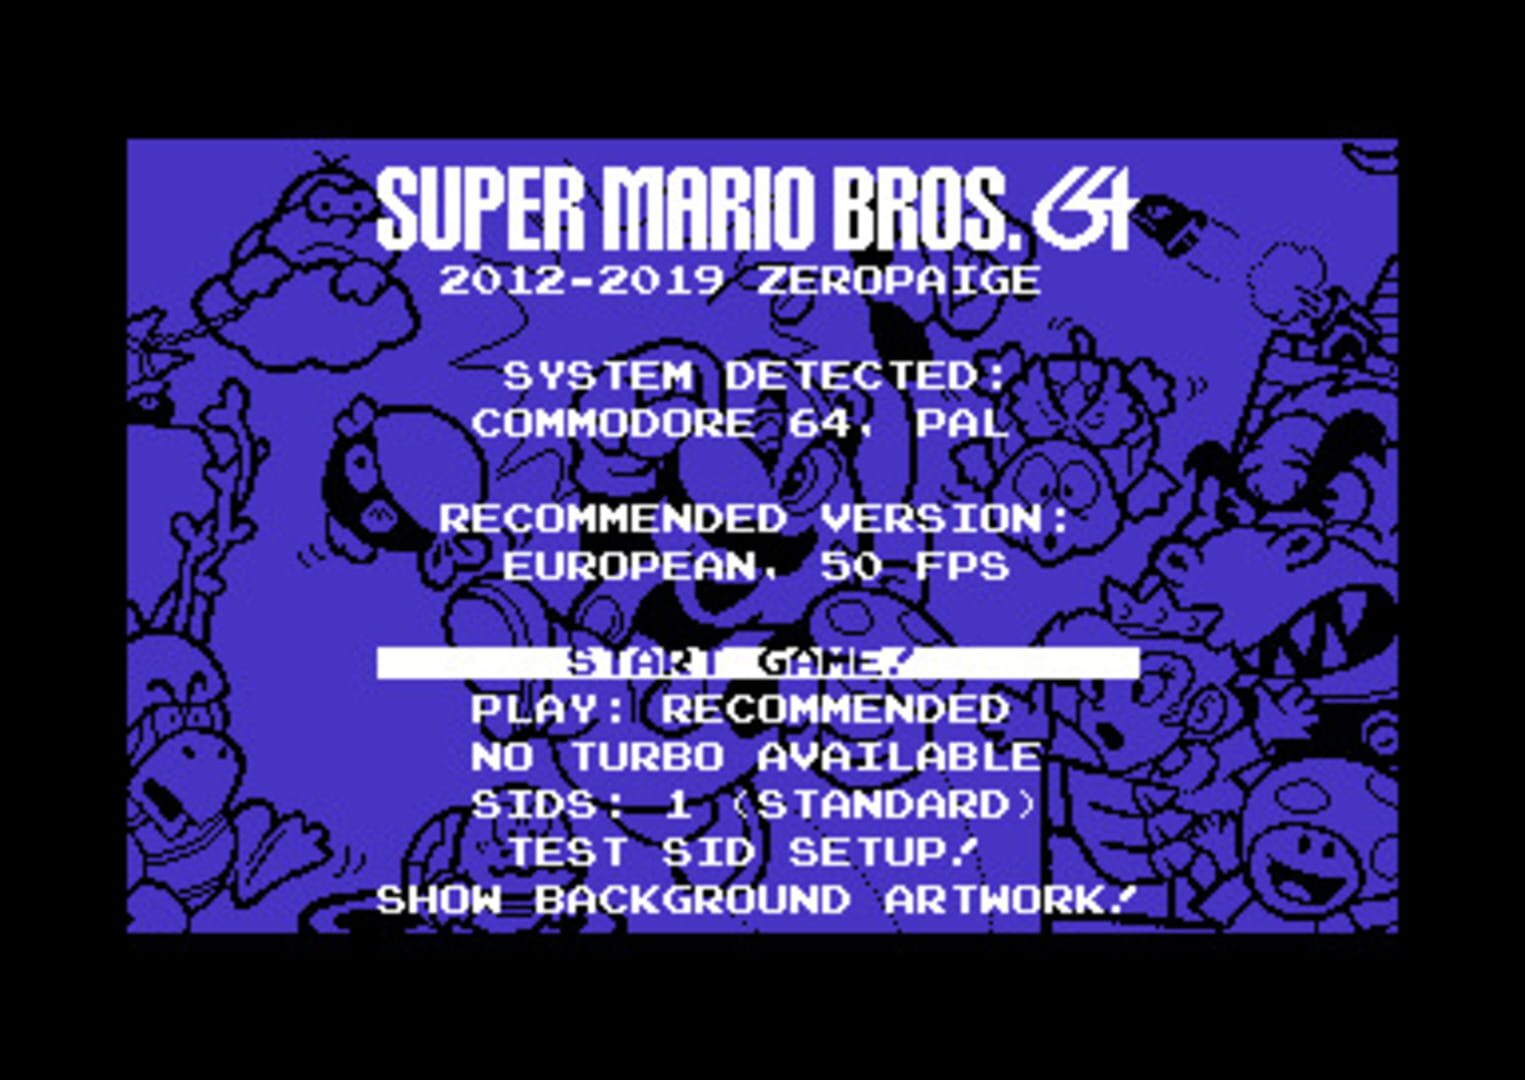 Super Mario Bros. 64 Image